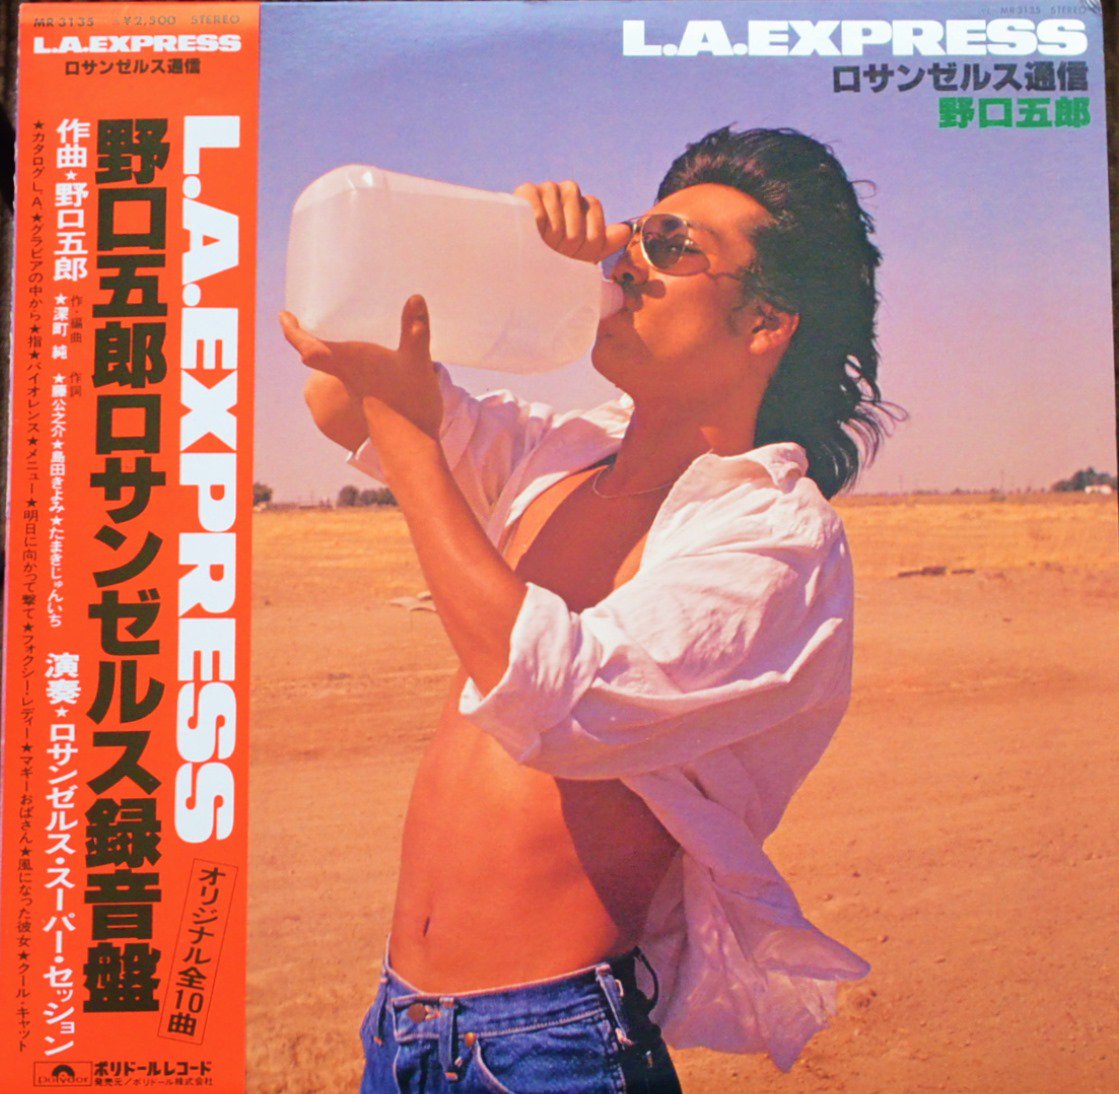 野口五郎 GORO NOGUCHI / ロサンゼルス通信 L.A.EXPRESS (LP)